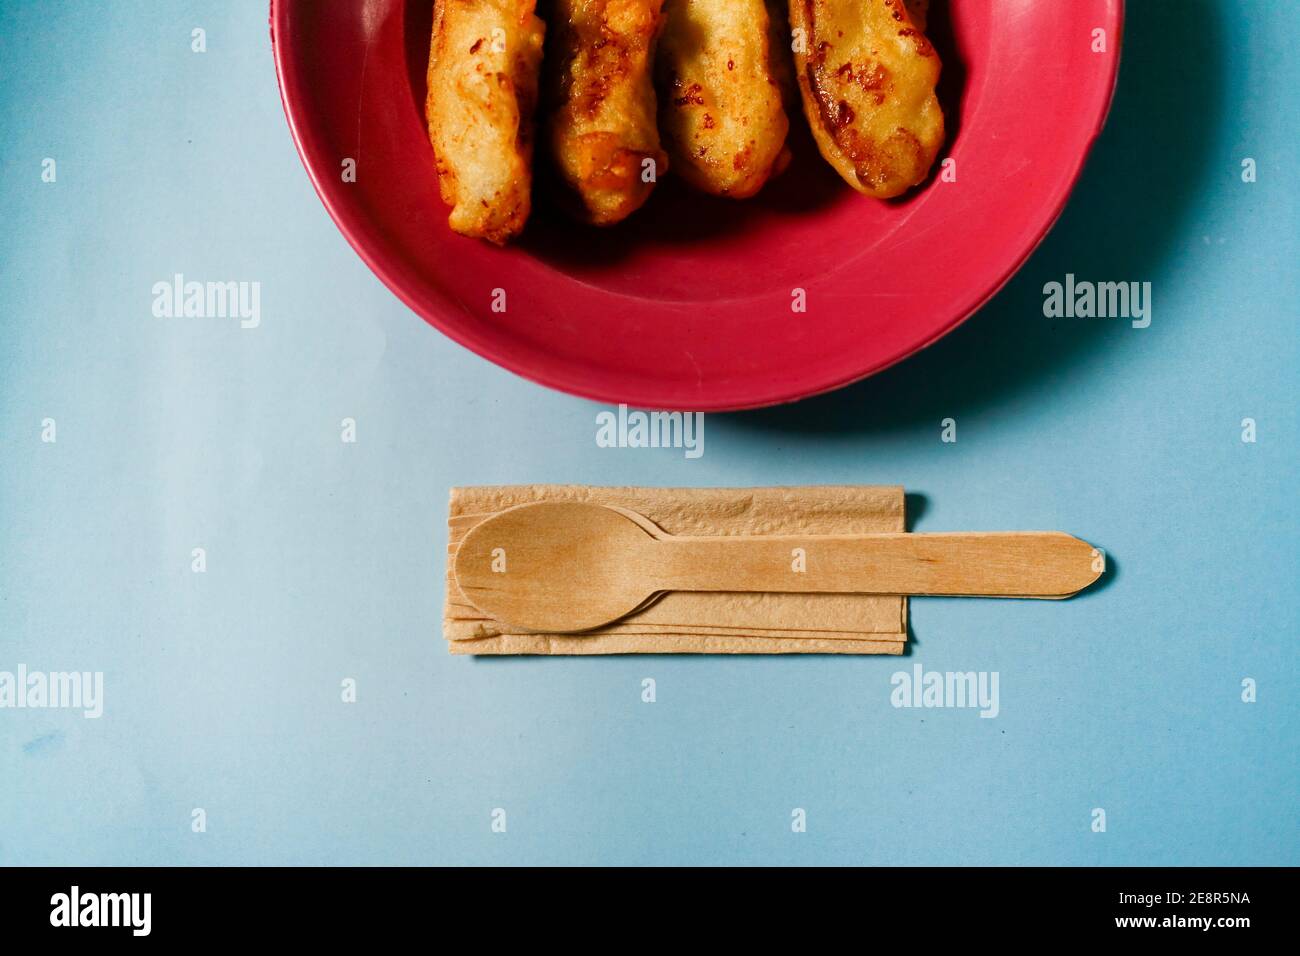 Banane gebraten auf rotem Teller mit Holzgerät isoliert auf Blauer Hintergrund Stockfoto